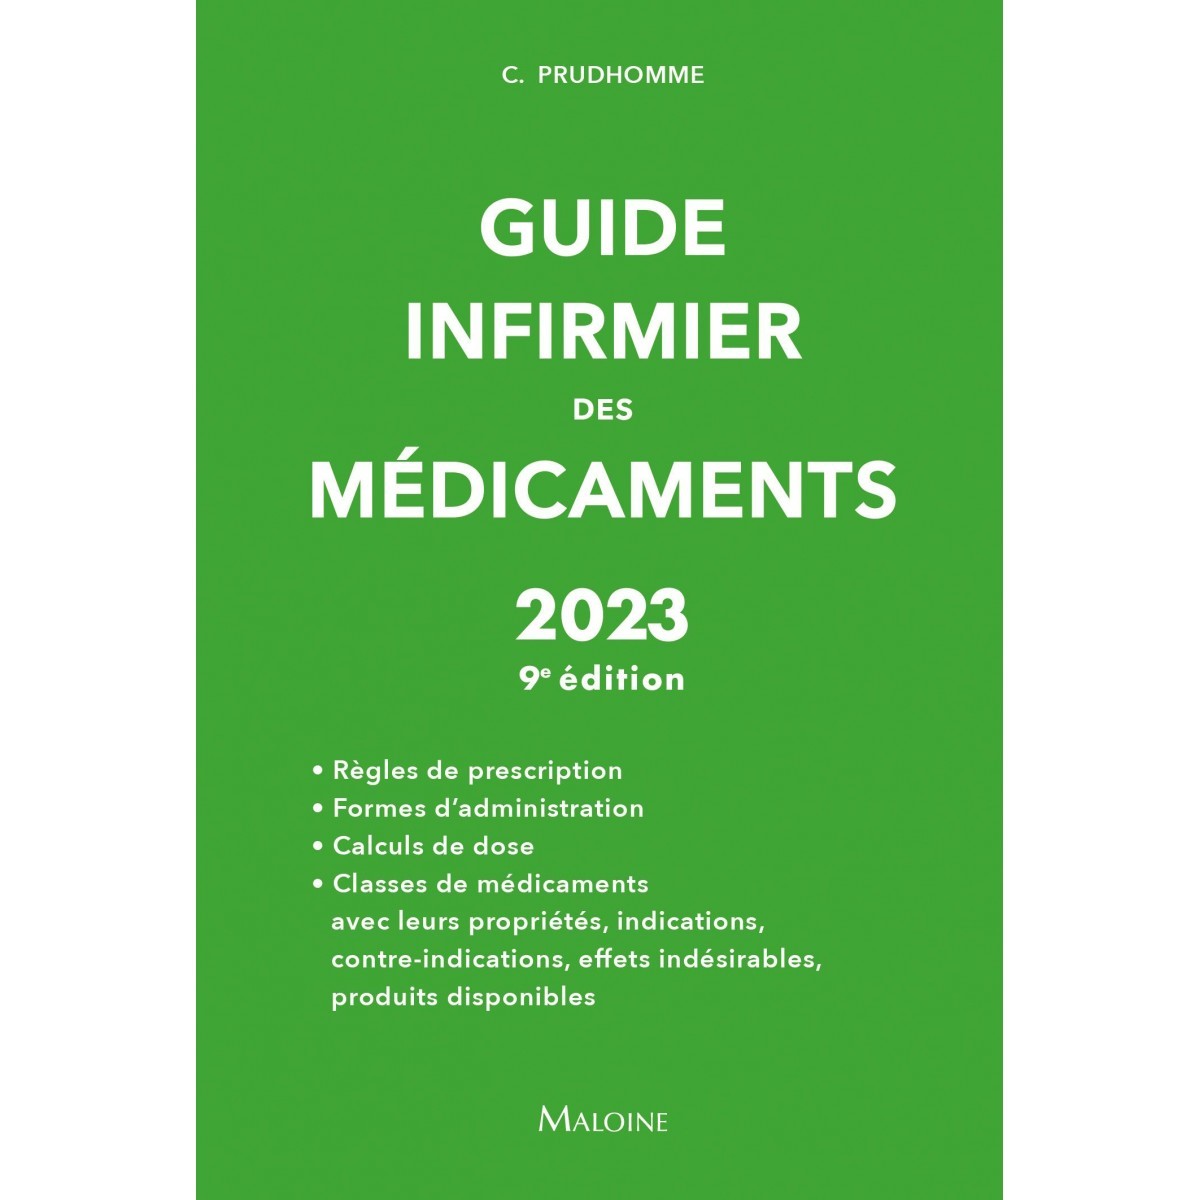 Guide infirmier des médicaments 2023